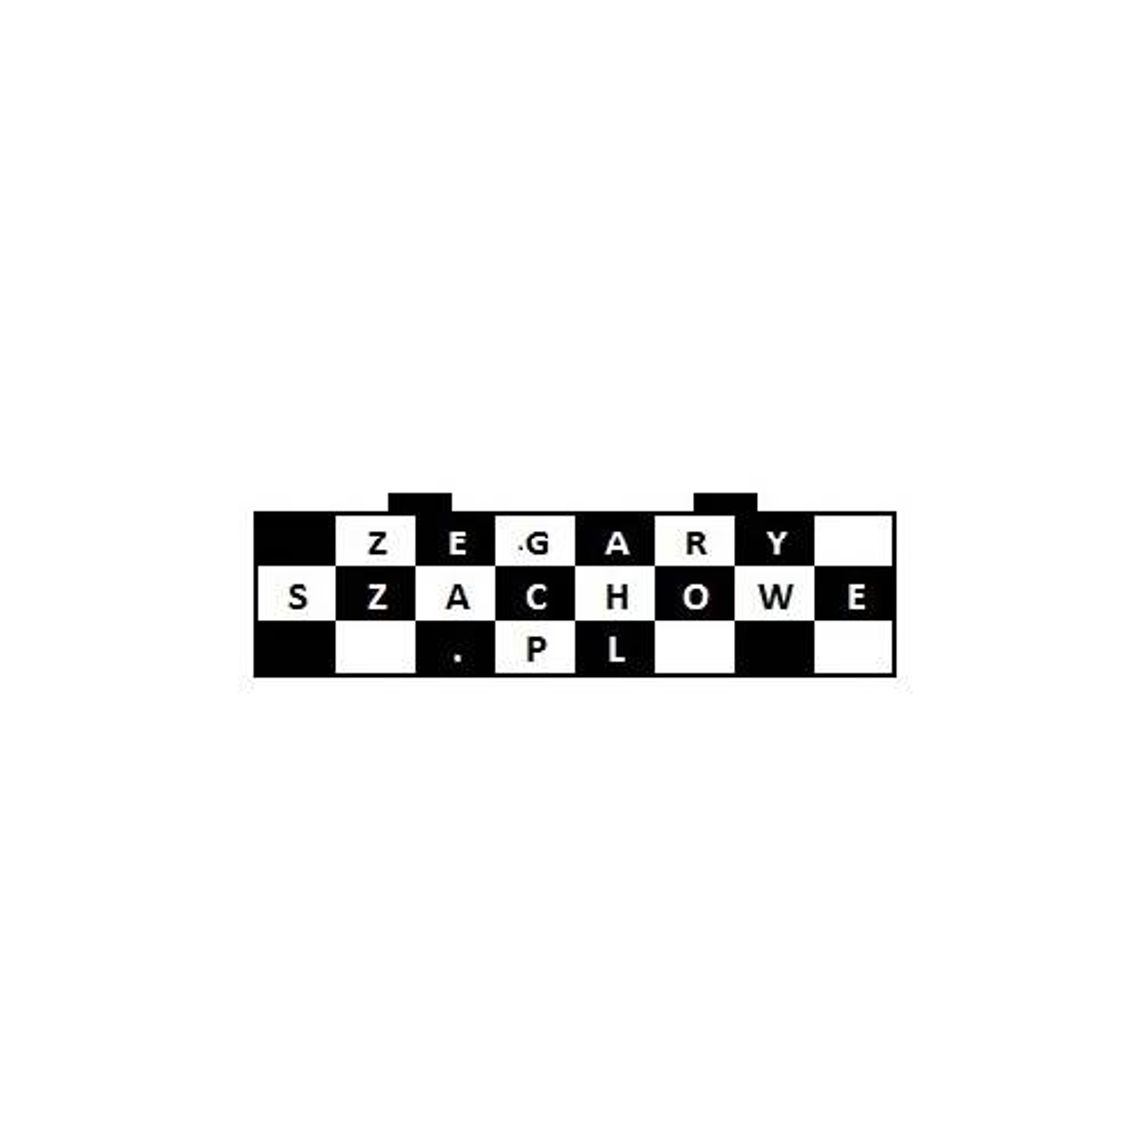 Zegaryszachowe.pl - profesjonalne zegary szachowe 